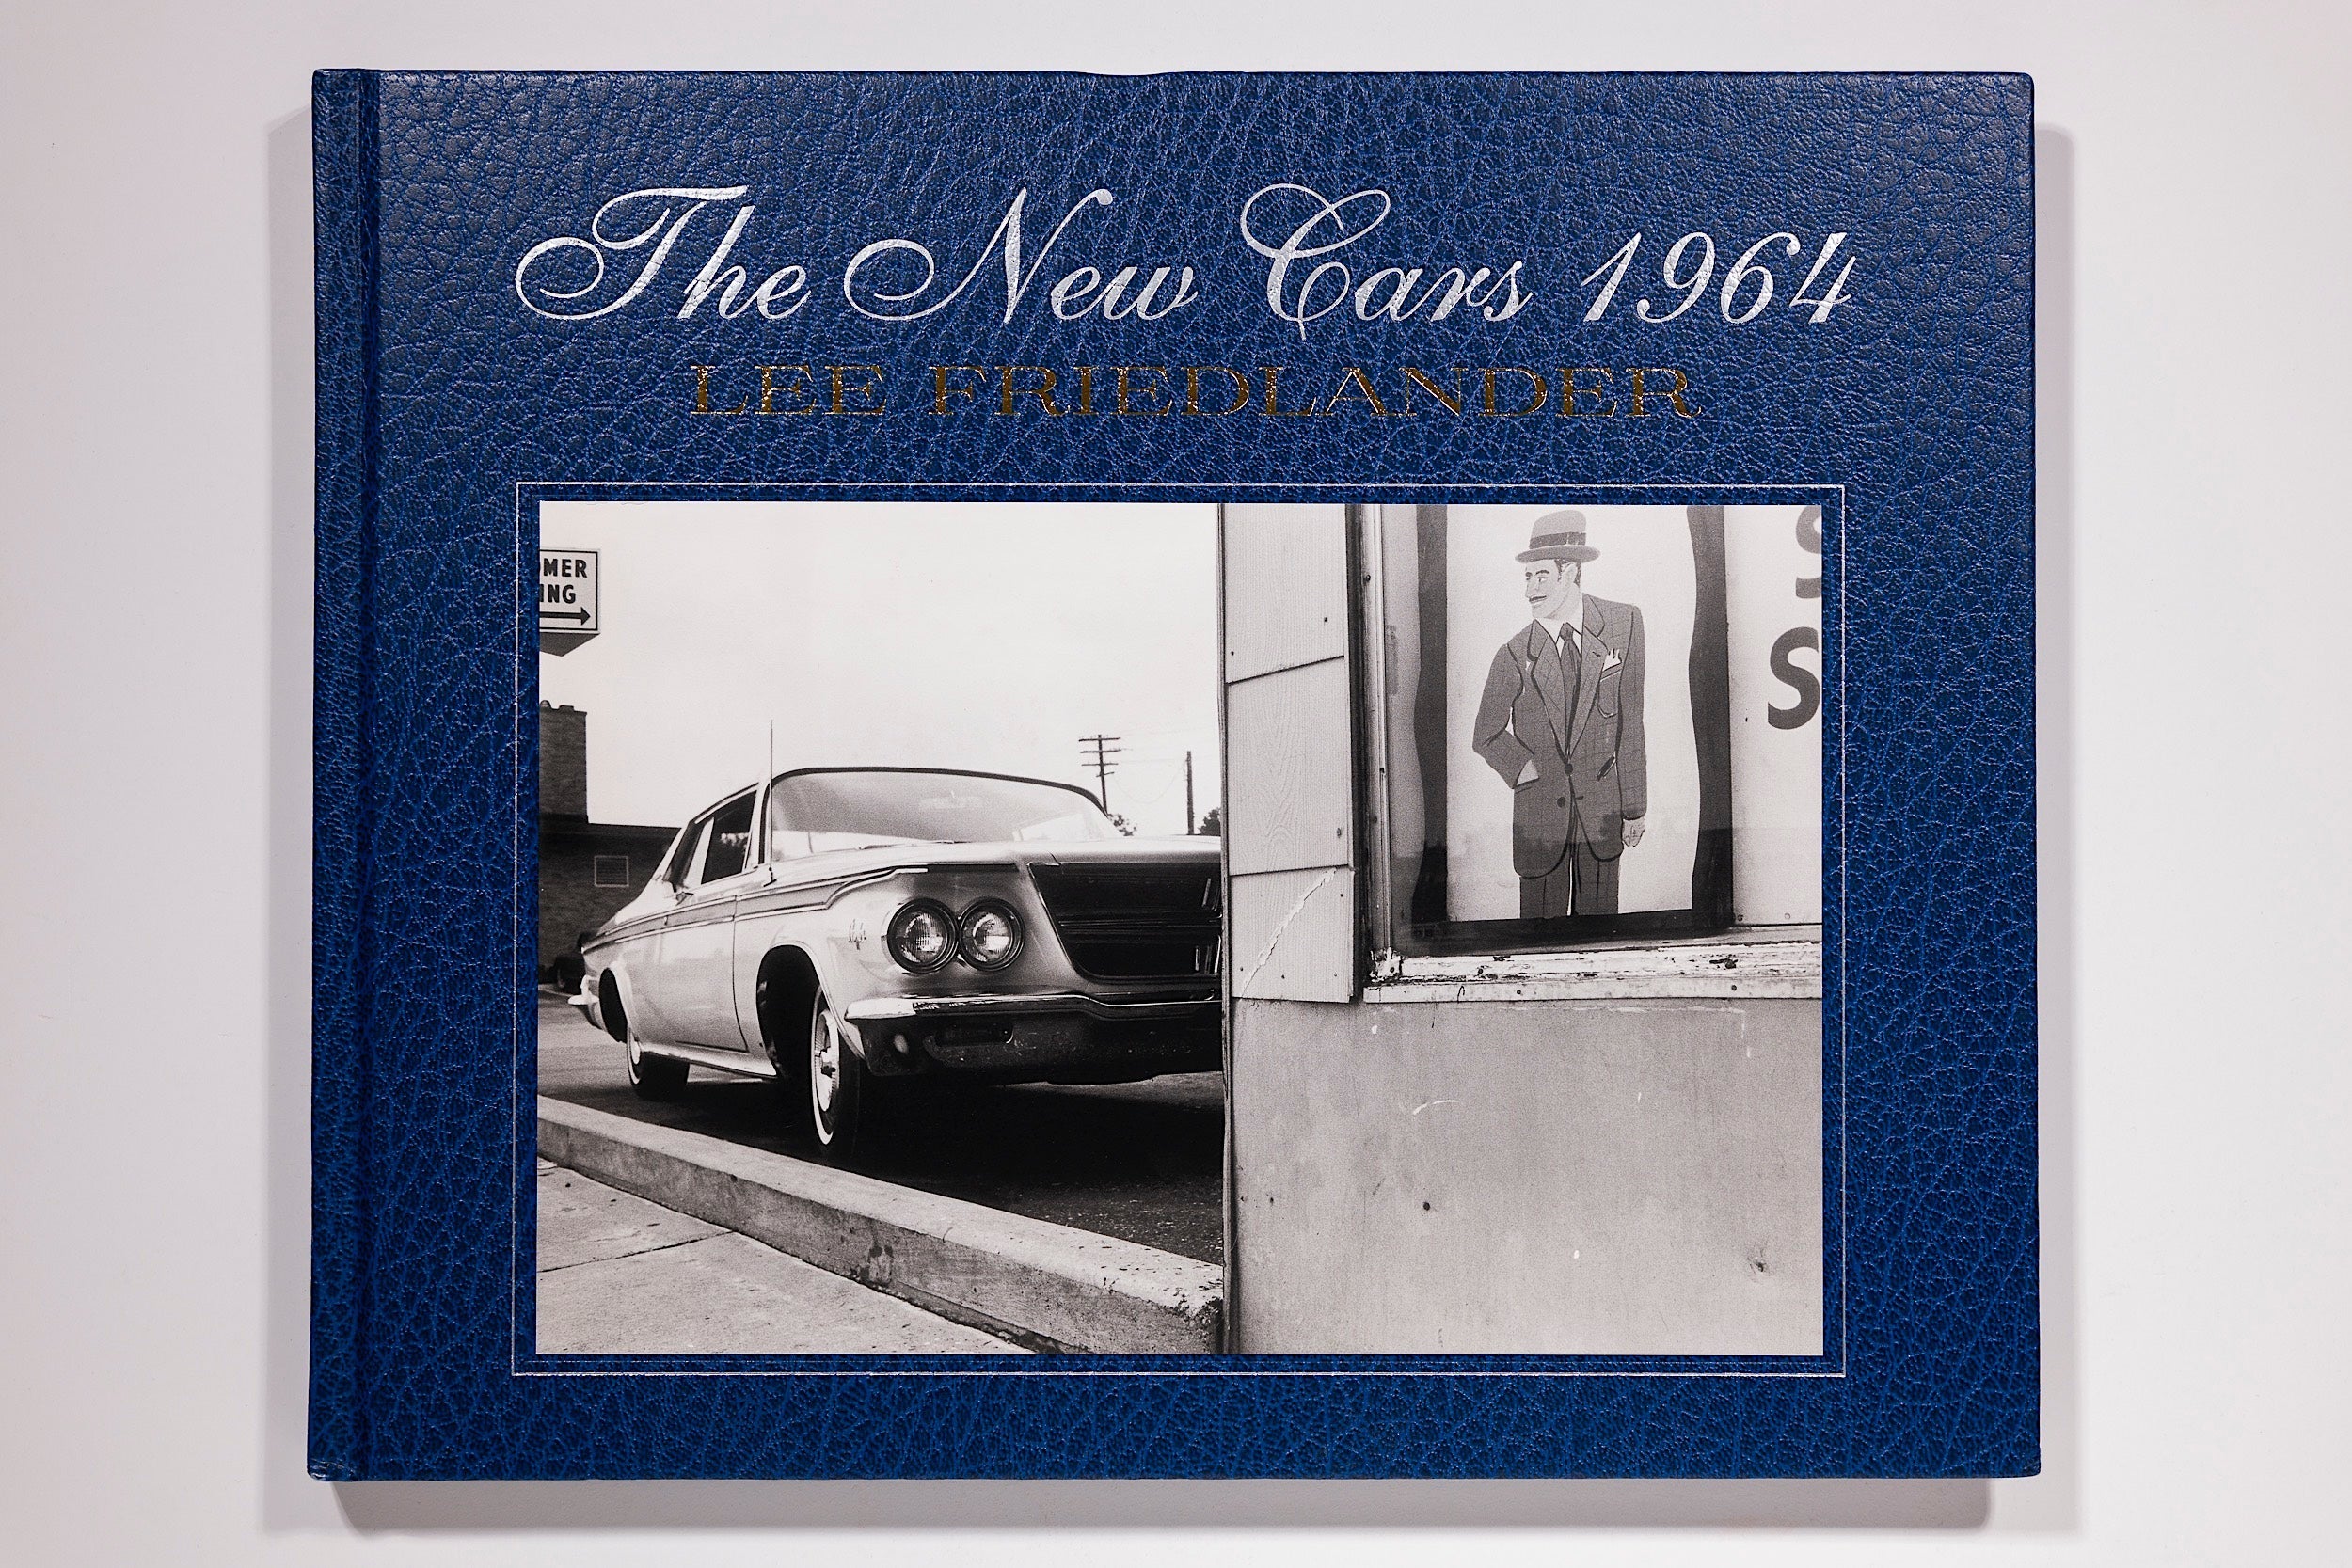 Lee Friedlander - The New Cars 1964